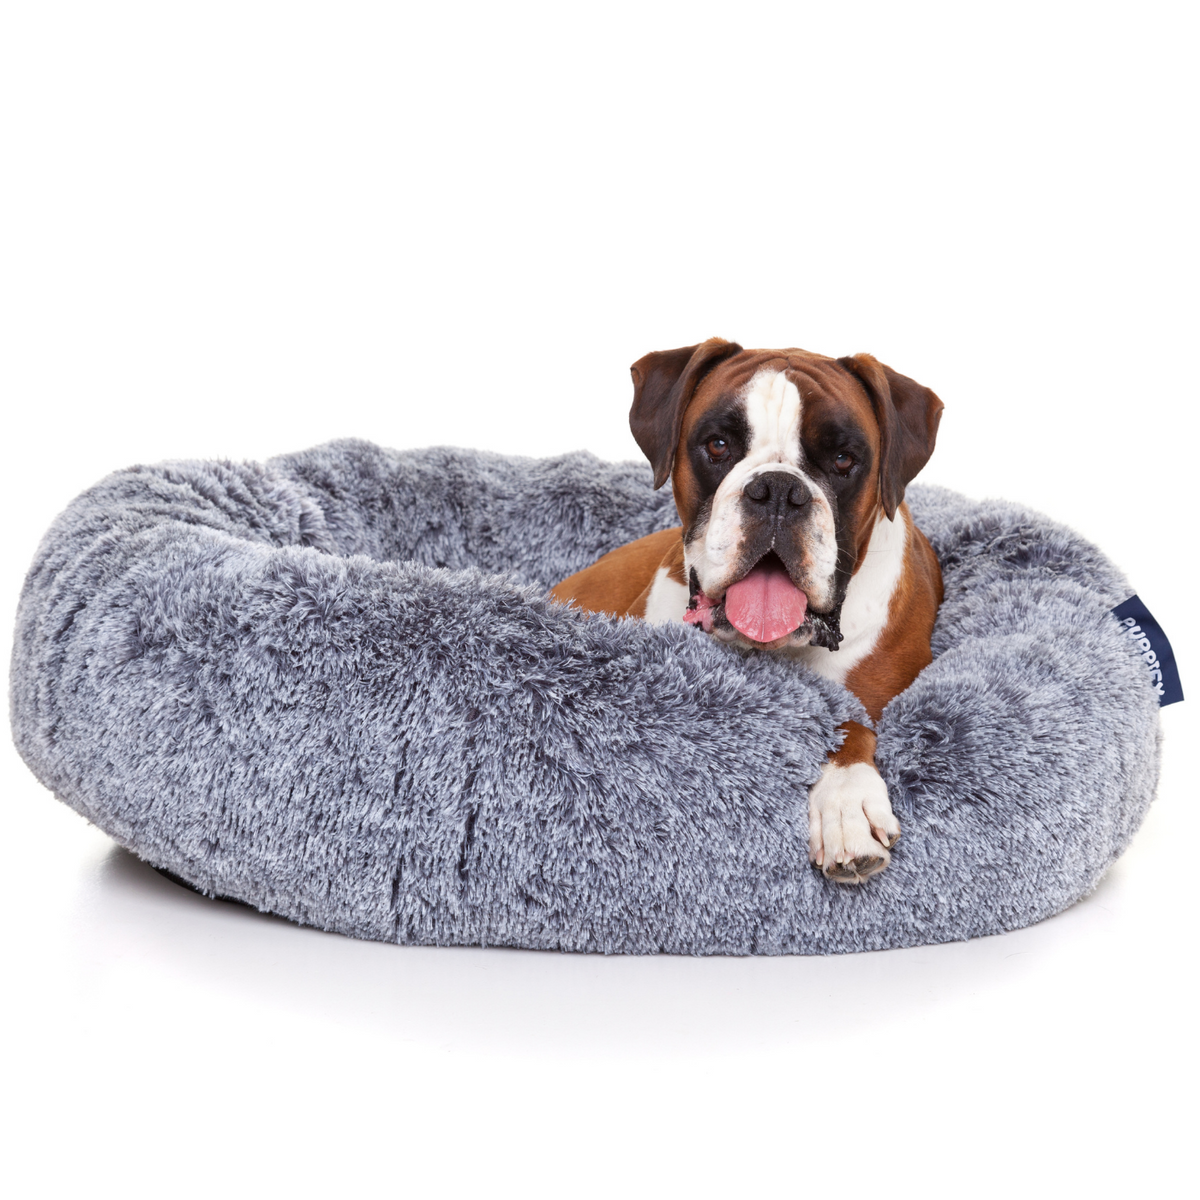 Rond hondenbed van Puppify met innovatief ontwerp voor de ideale slaaphouding.